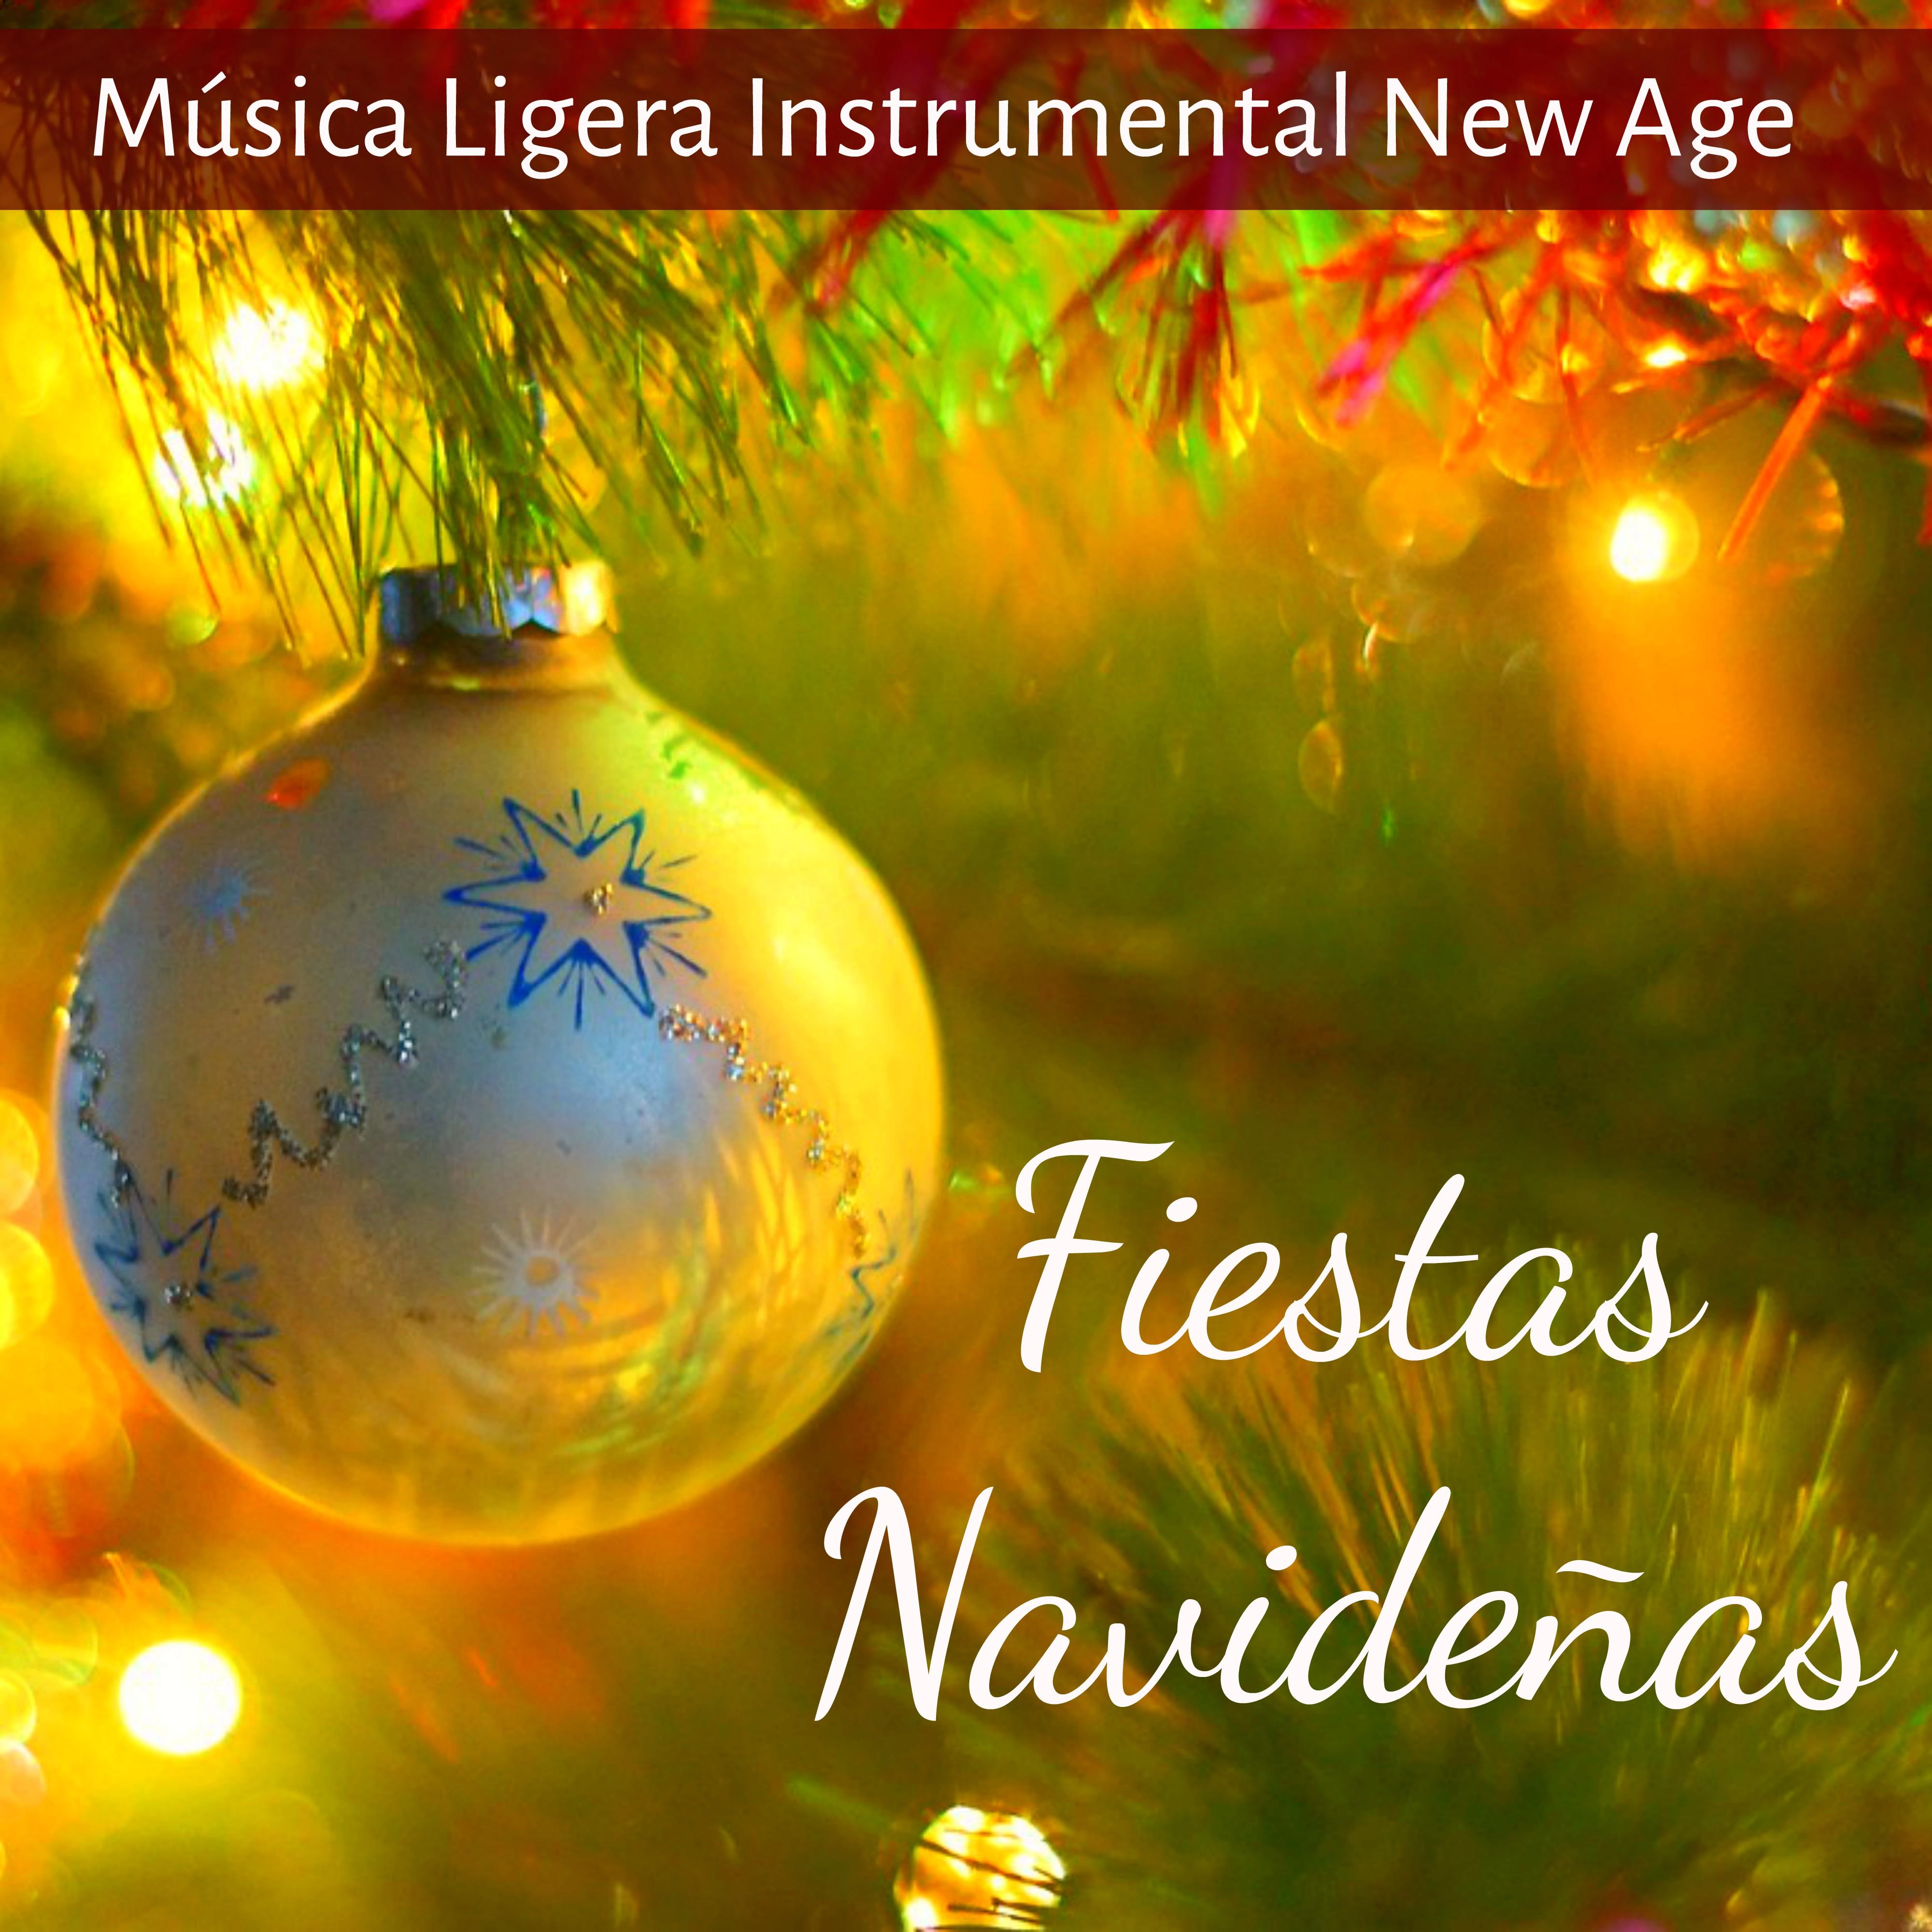 Fiestas Navide as  Mu sica Ligera Instrumental New Age de la Naturaleza para Gordo Navidad Chakras del Cuerpo Humano y Relajar la Mente